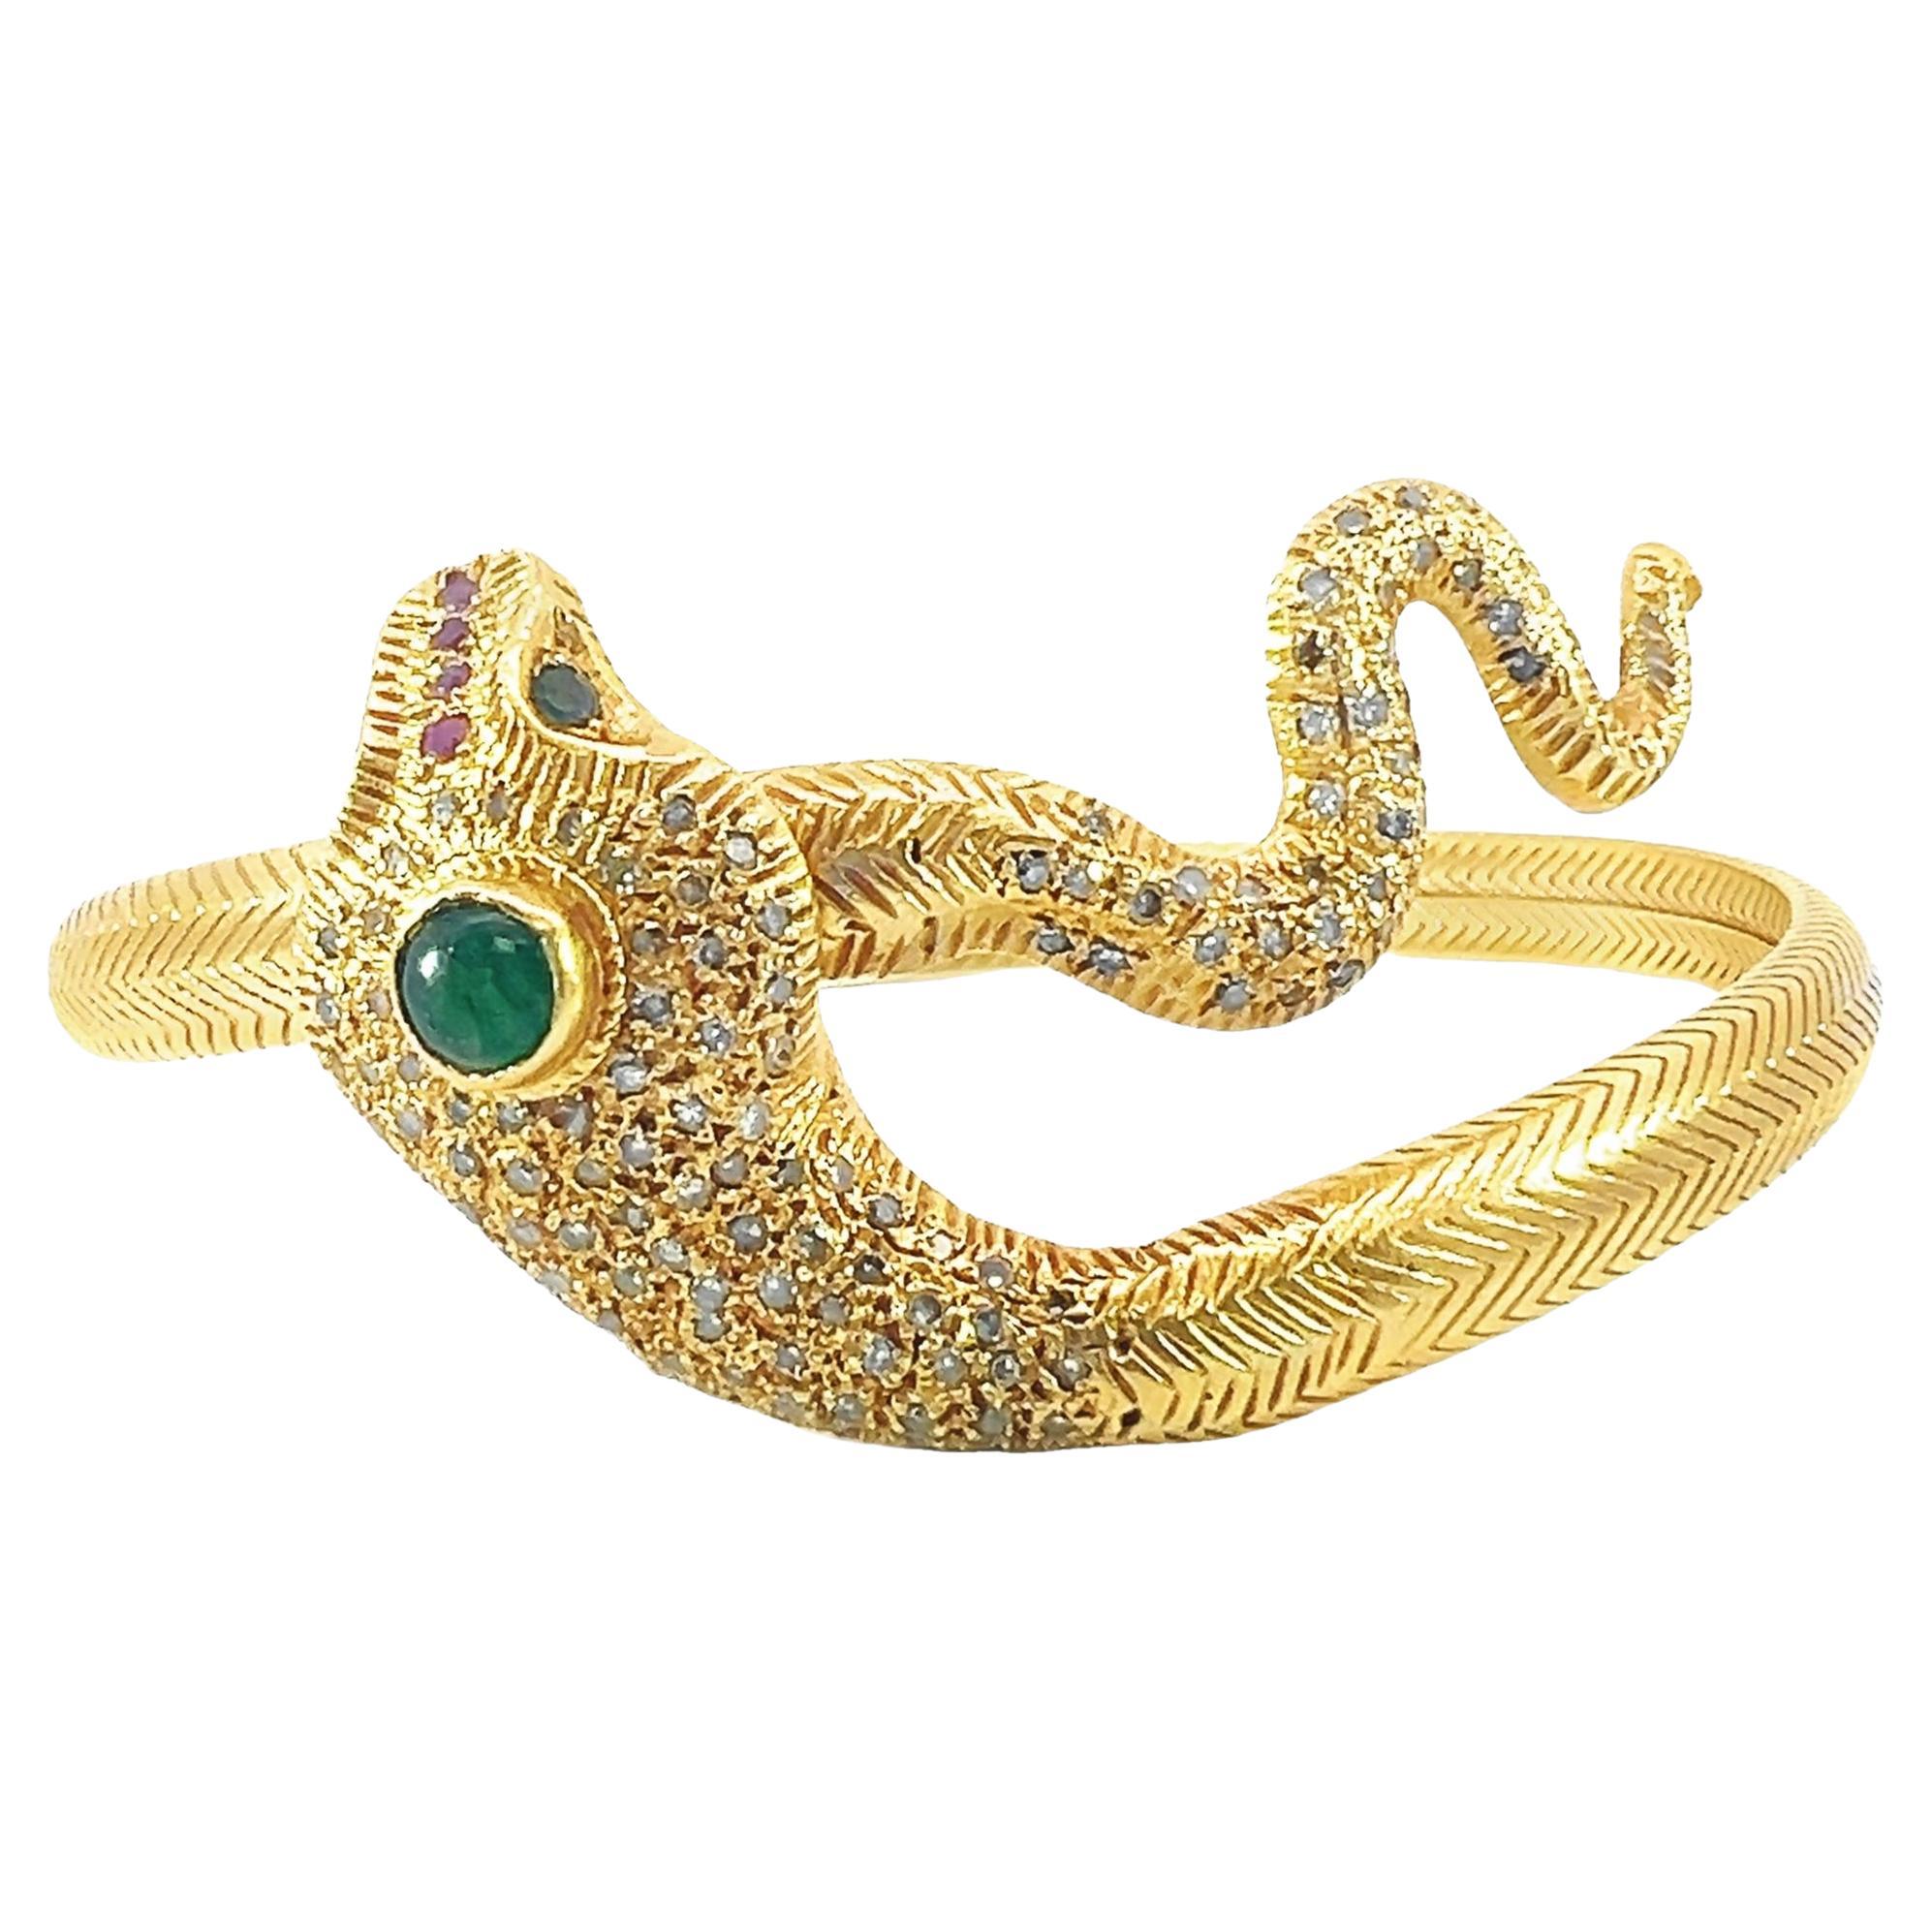 Magnifique bracelet serpent en or massif orné de diamants, émeraudes et rubis